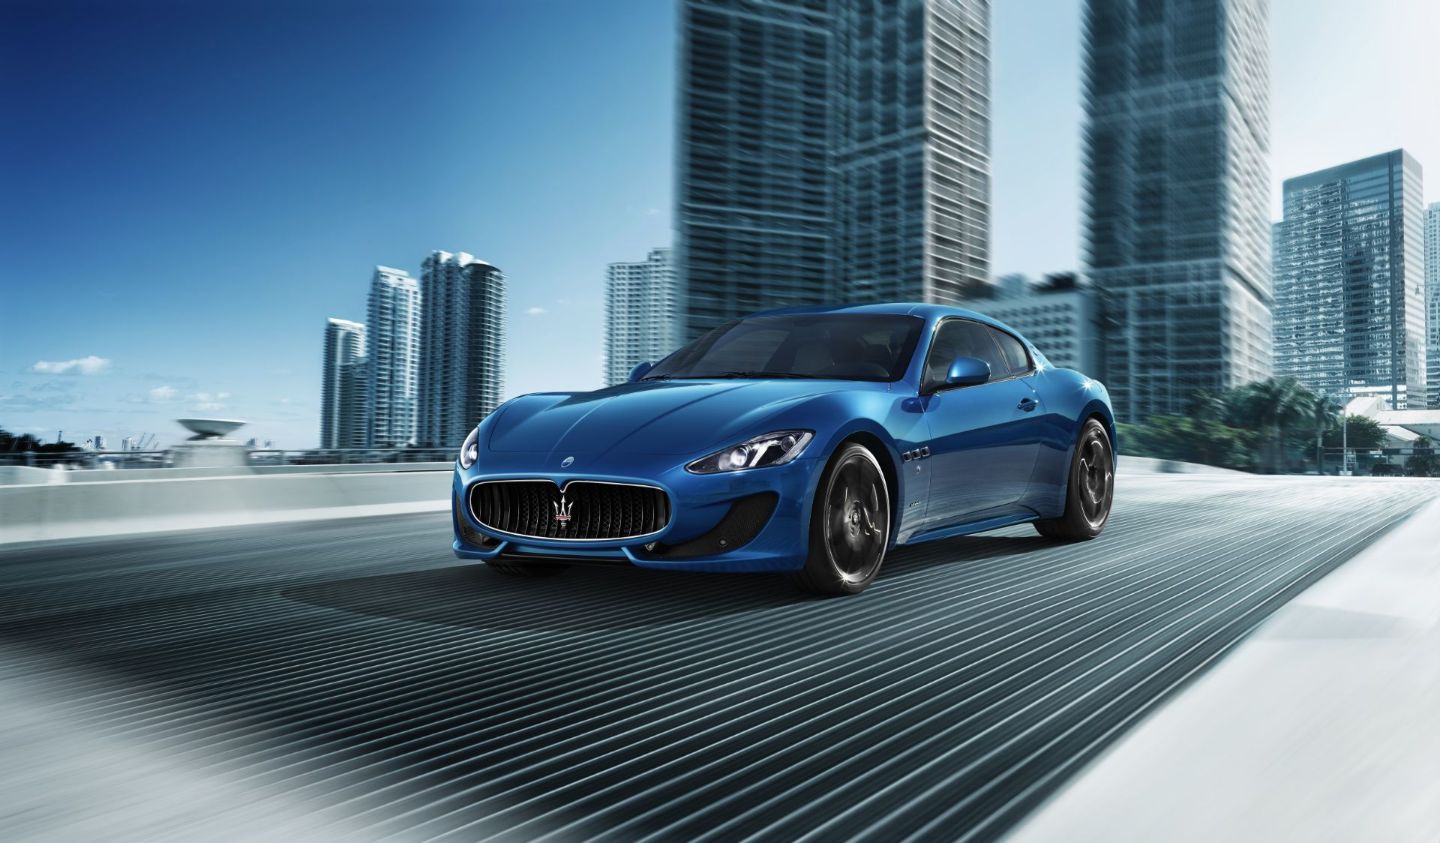 El nuevo Maserati GranTurismo debutará en 2020 con grandes cambios